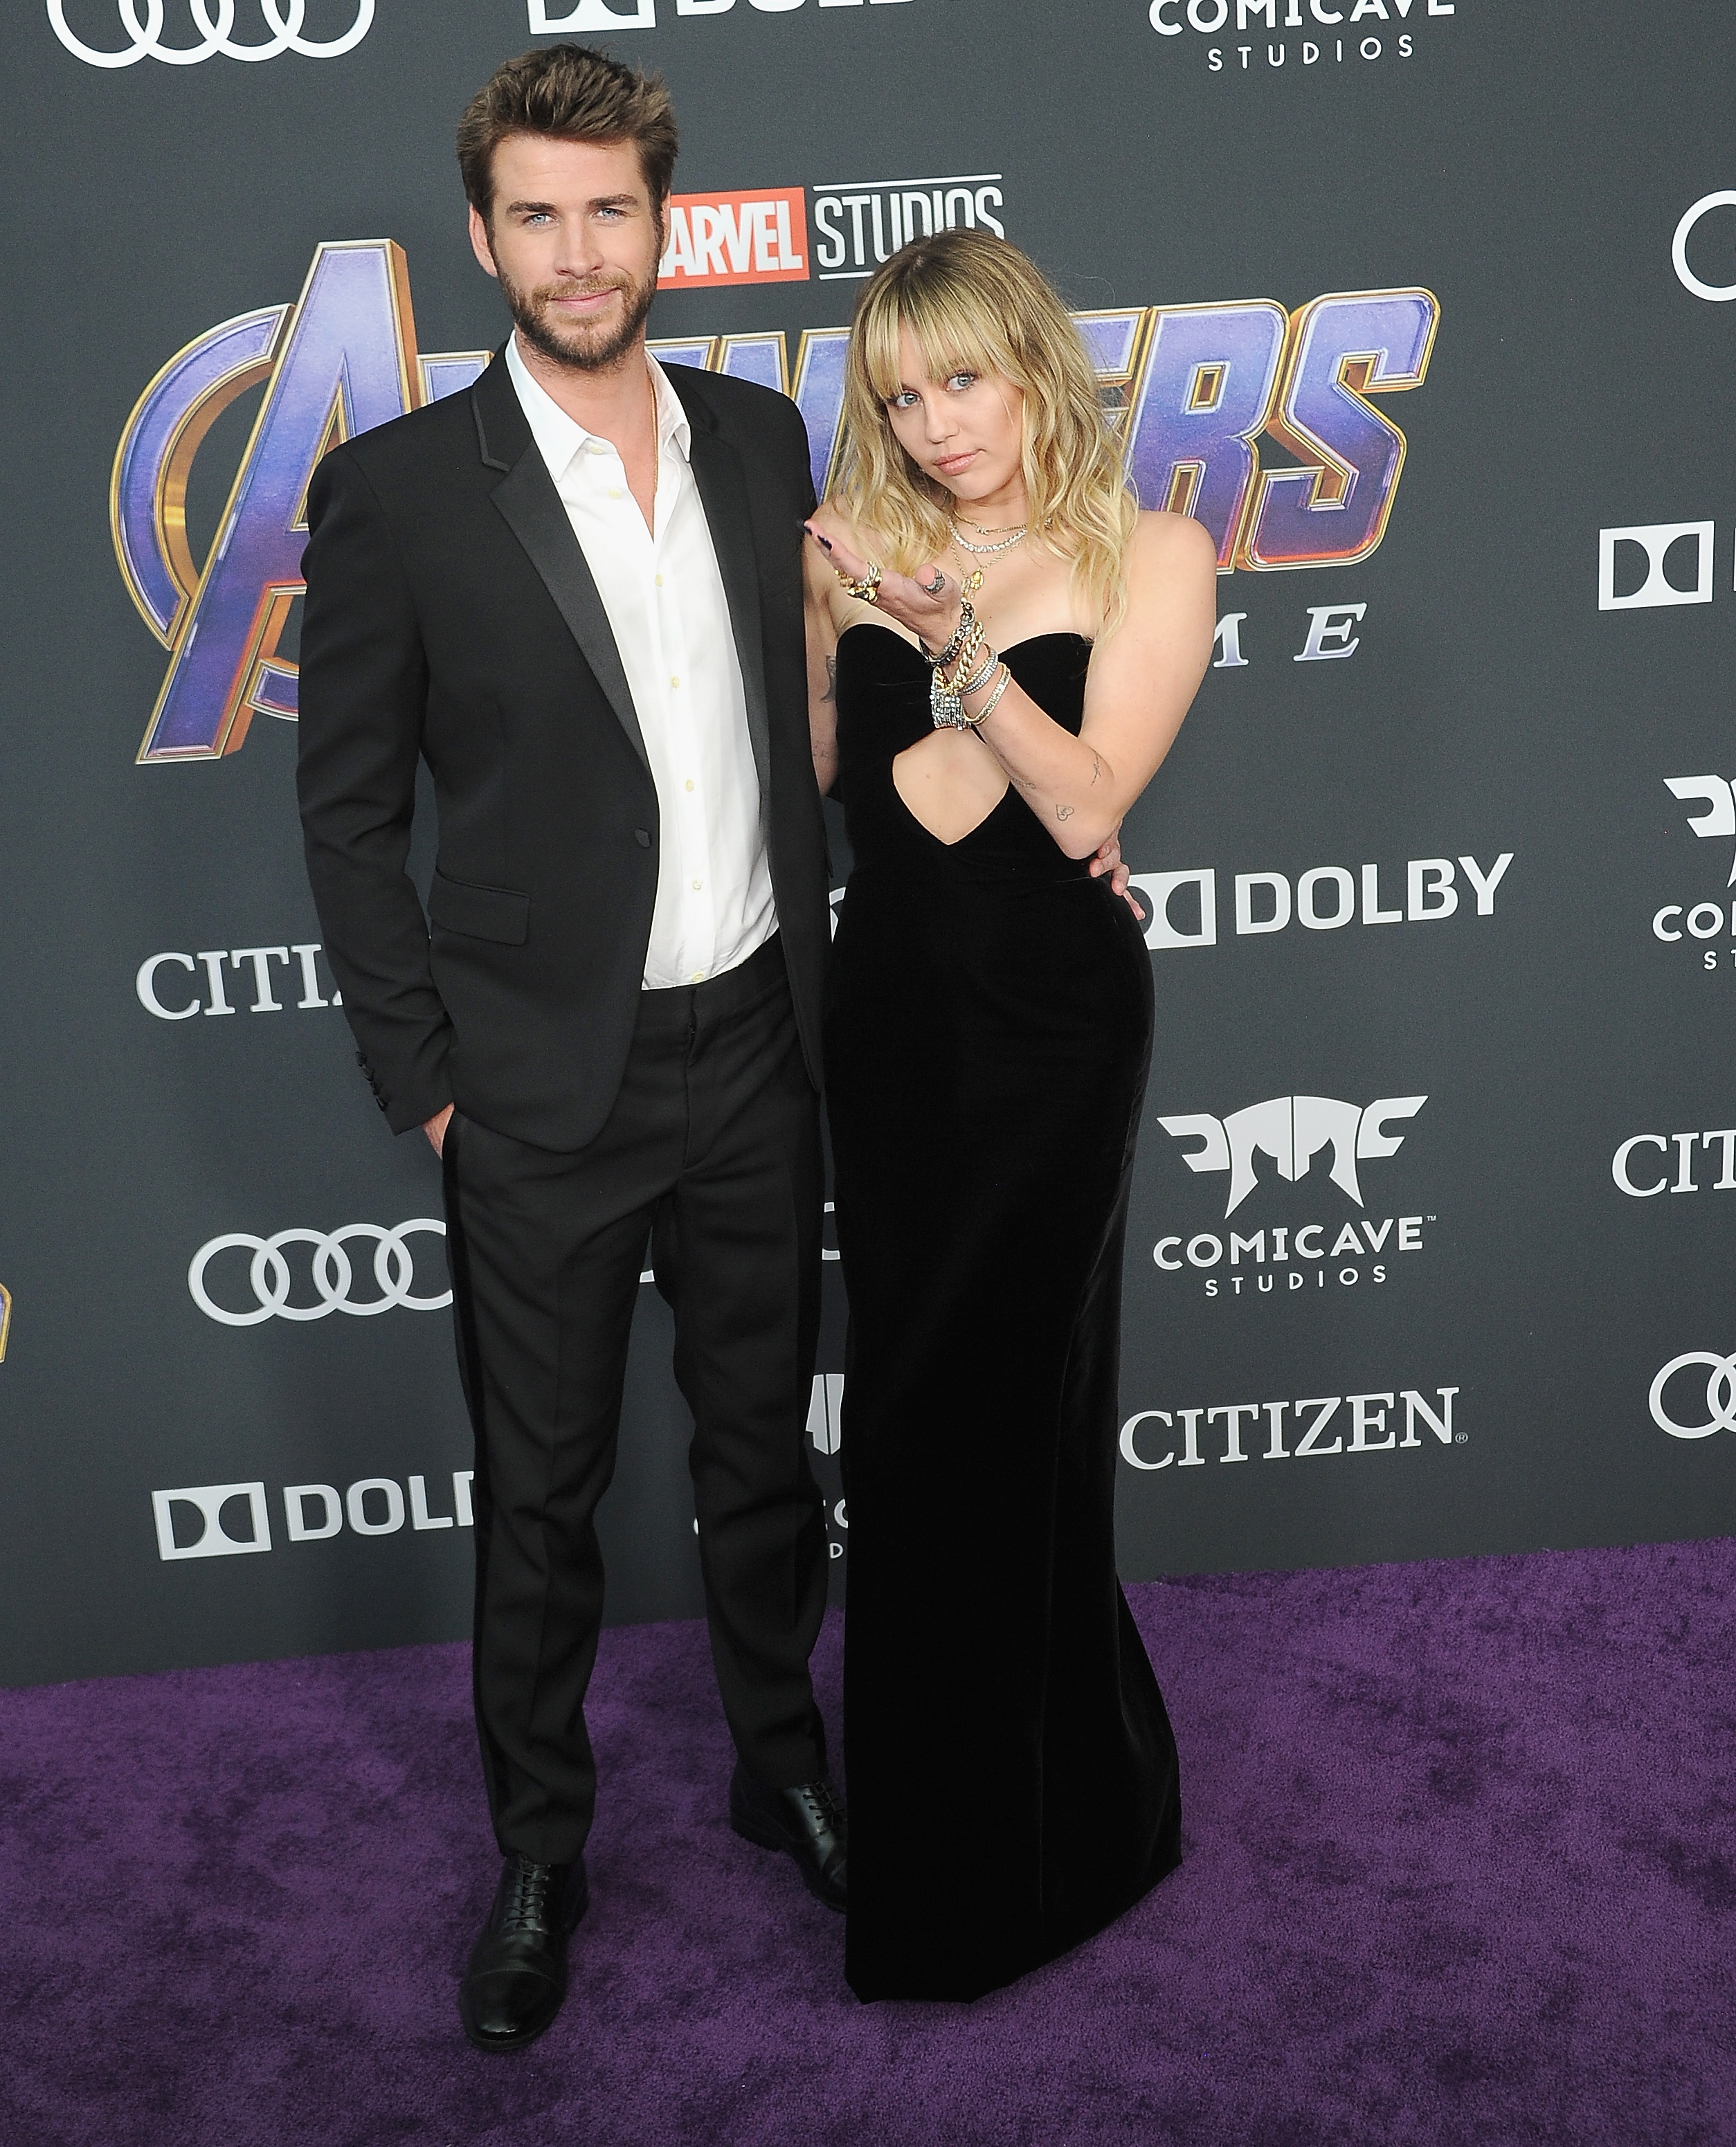 Miley Cyrus and Liam Hemsworth, Avengers: Endgame premiere, LA April 22, 2019